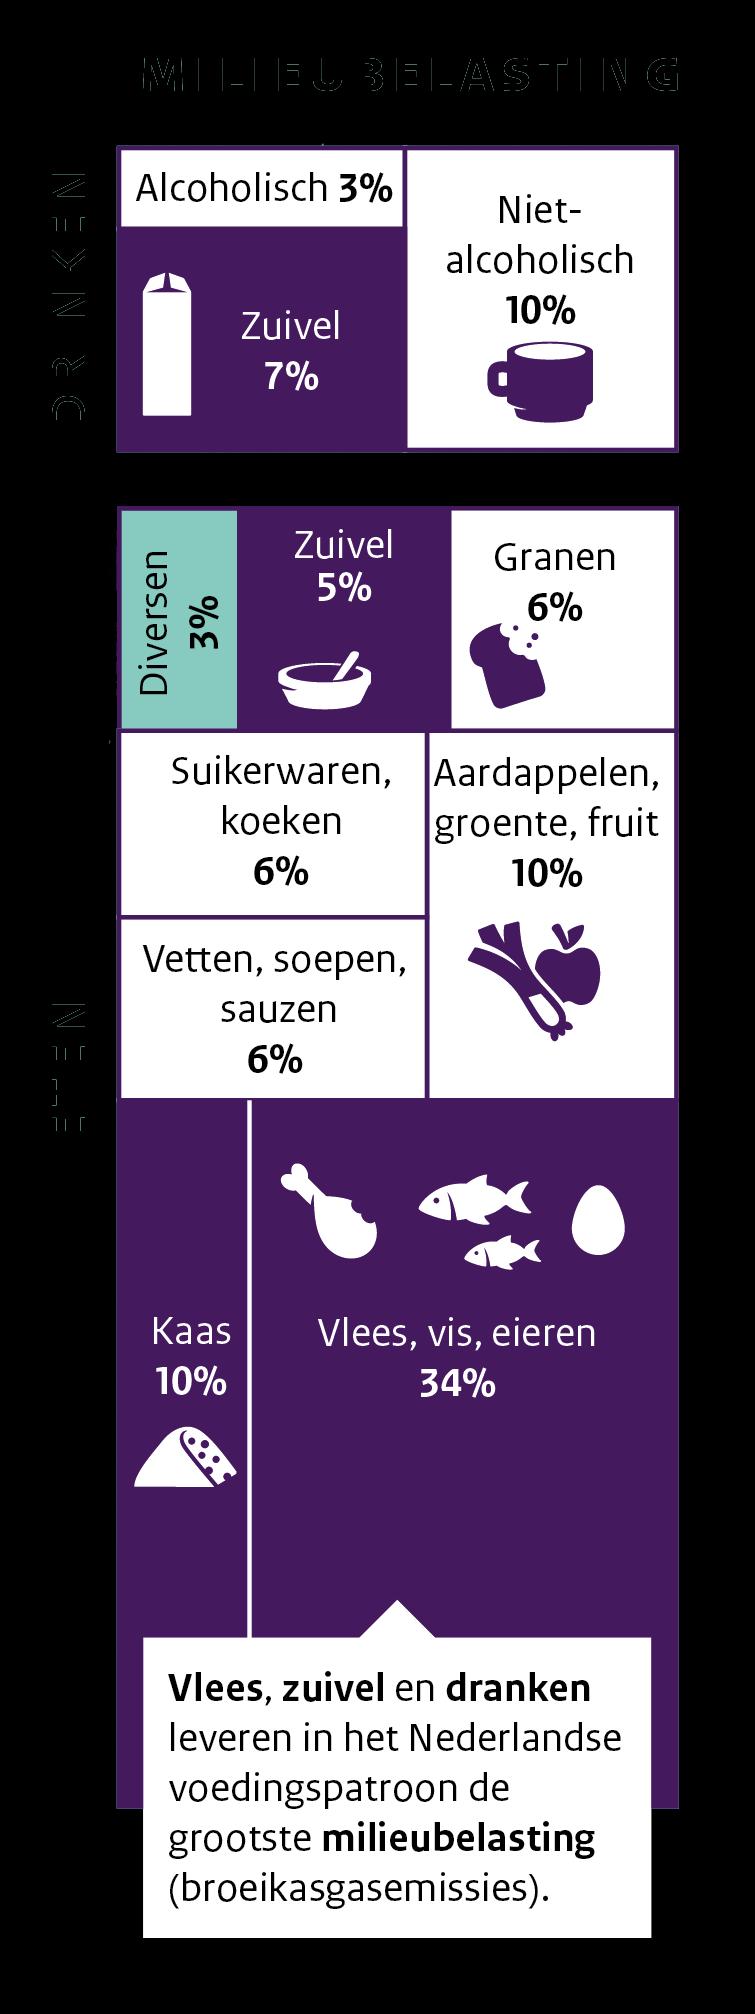 NL voedingspatroon: groot impact op het milieu Voedselconsumptie van volwassen